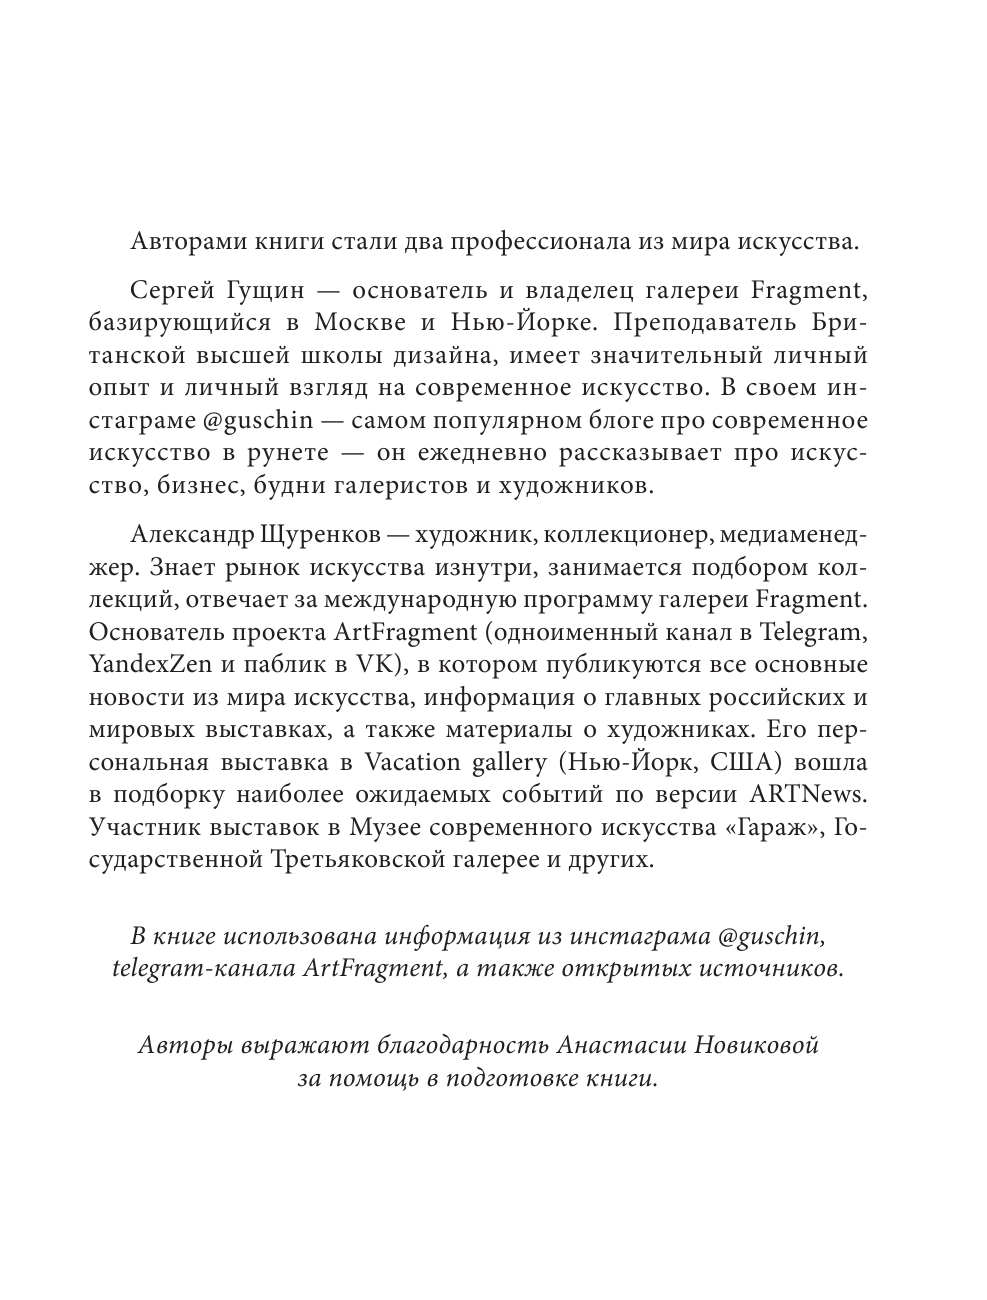 Гущин Сергей, Щуренков Александр Современное искусство и как перестать его бояться - страница 4